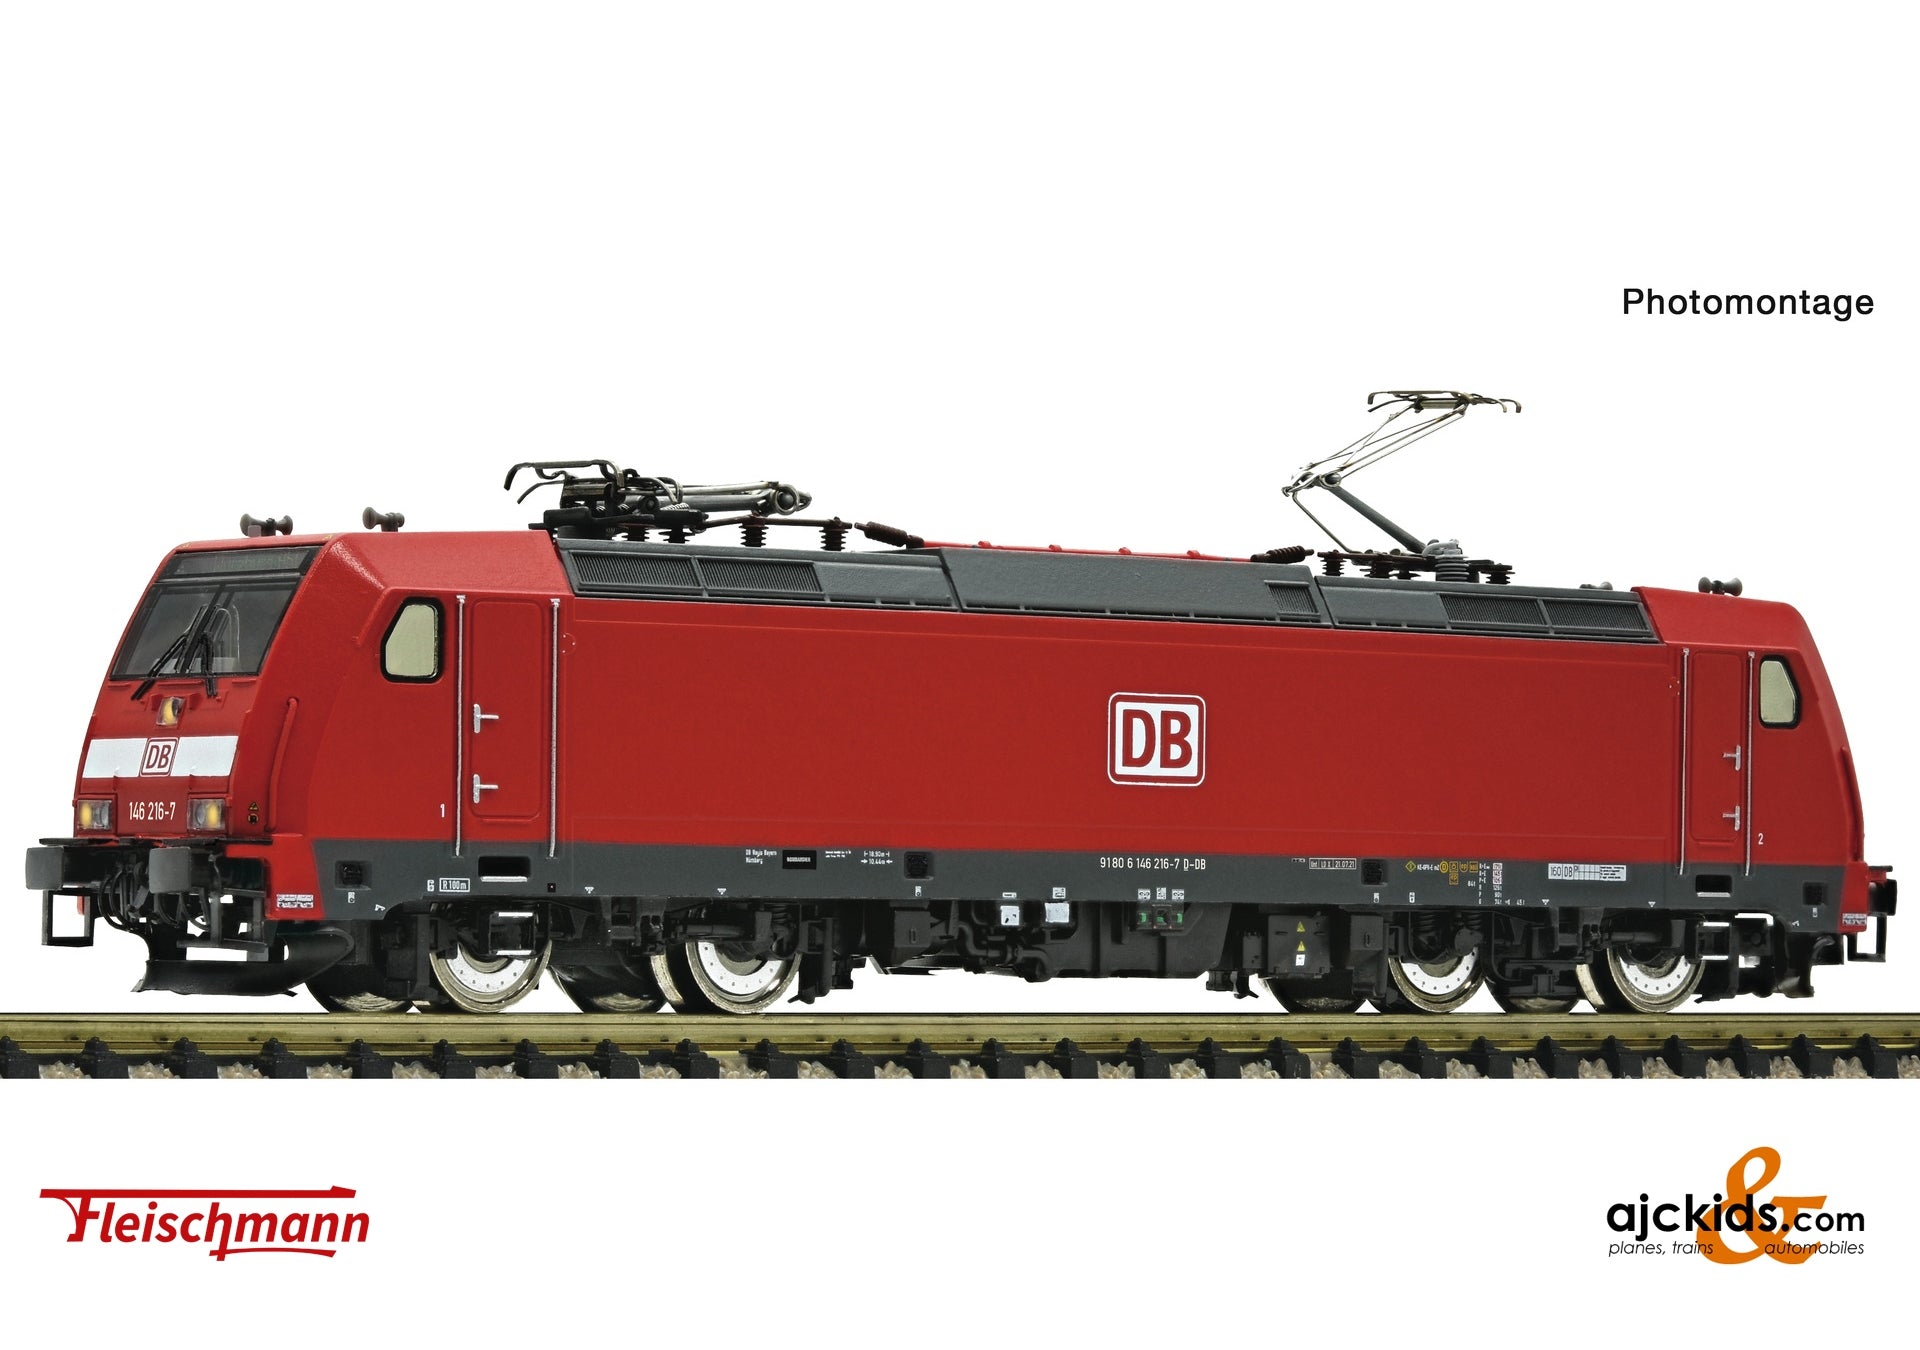 Fleischmann 7560008 - Electric locomotive class 146.2, DB AG at Ajckids.com